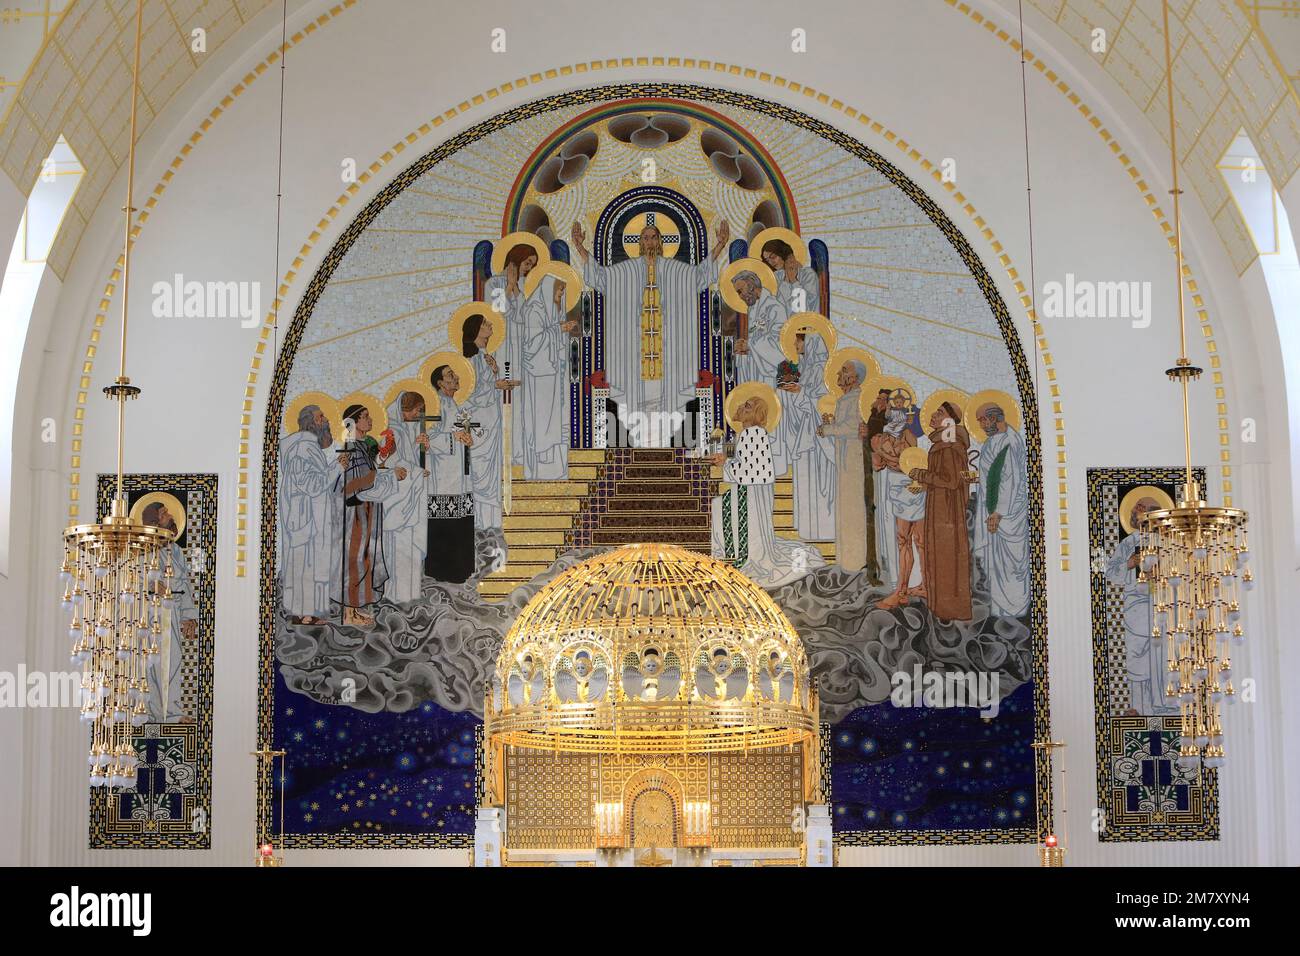 Le maître-autel et son baldaquin doré en cuivre. Steinhof Kirche, erbaut von Otto Wagner zwischen 1902 und 19077. Vienne. Autriche. Europa. Stockfoto